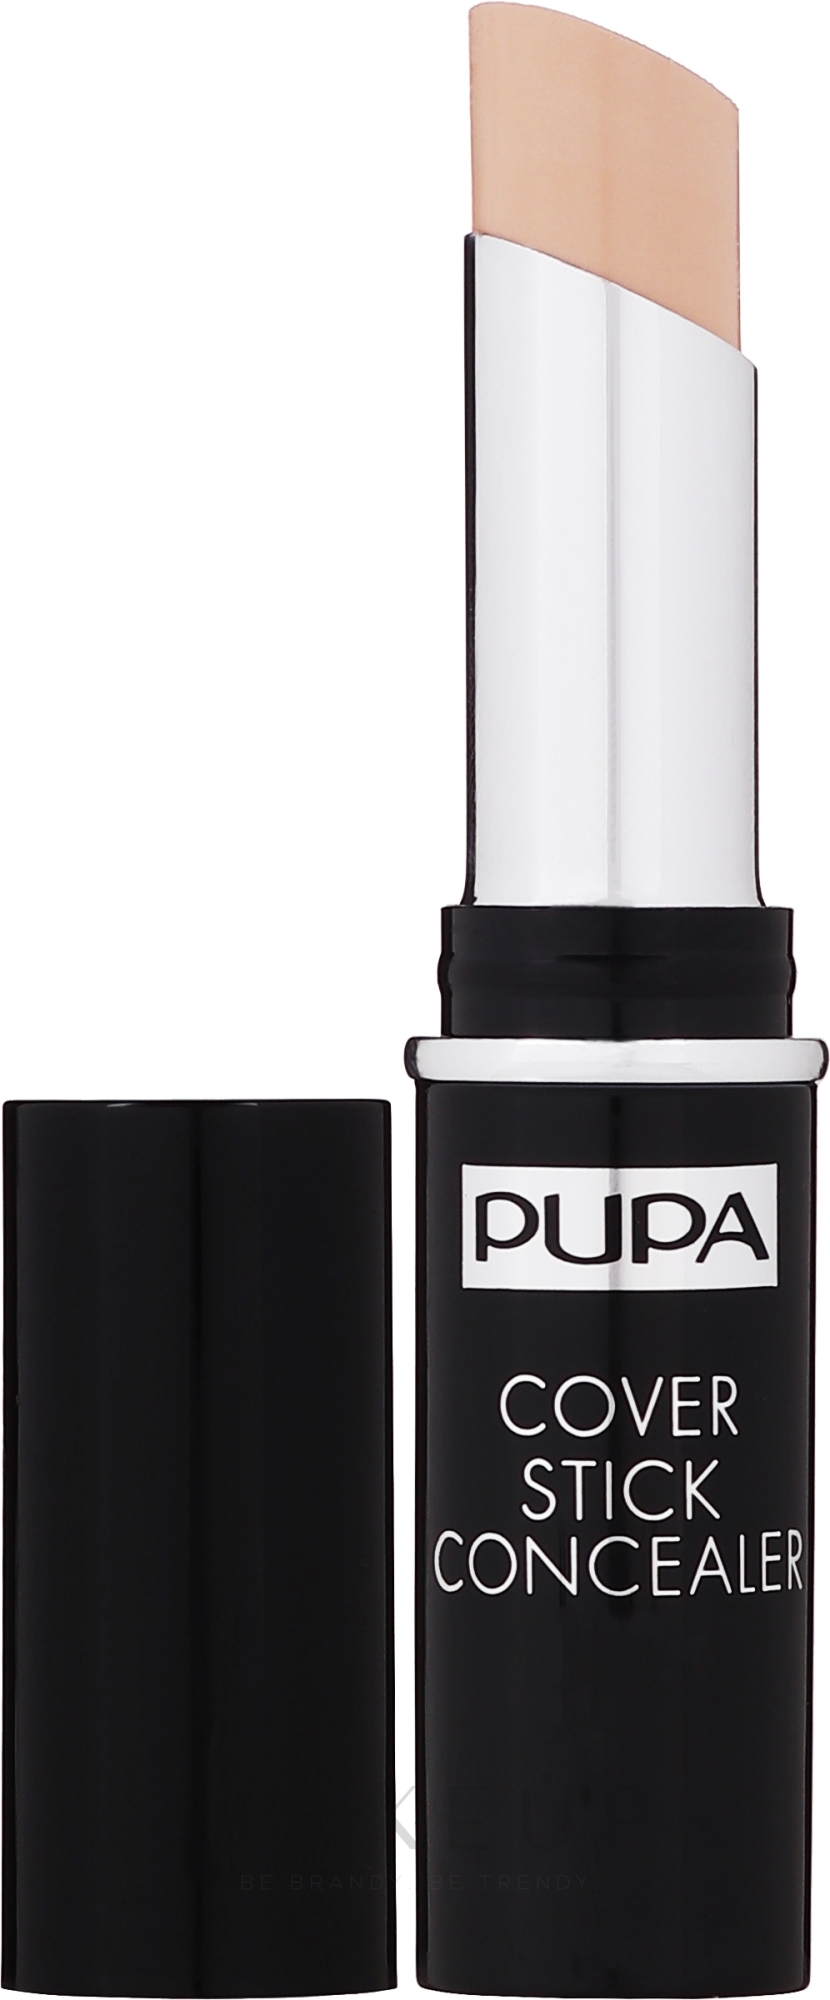 Gesichtsconcealer Stick - Pupa Cover Stick Concealer — Foto 001 - Light Beige